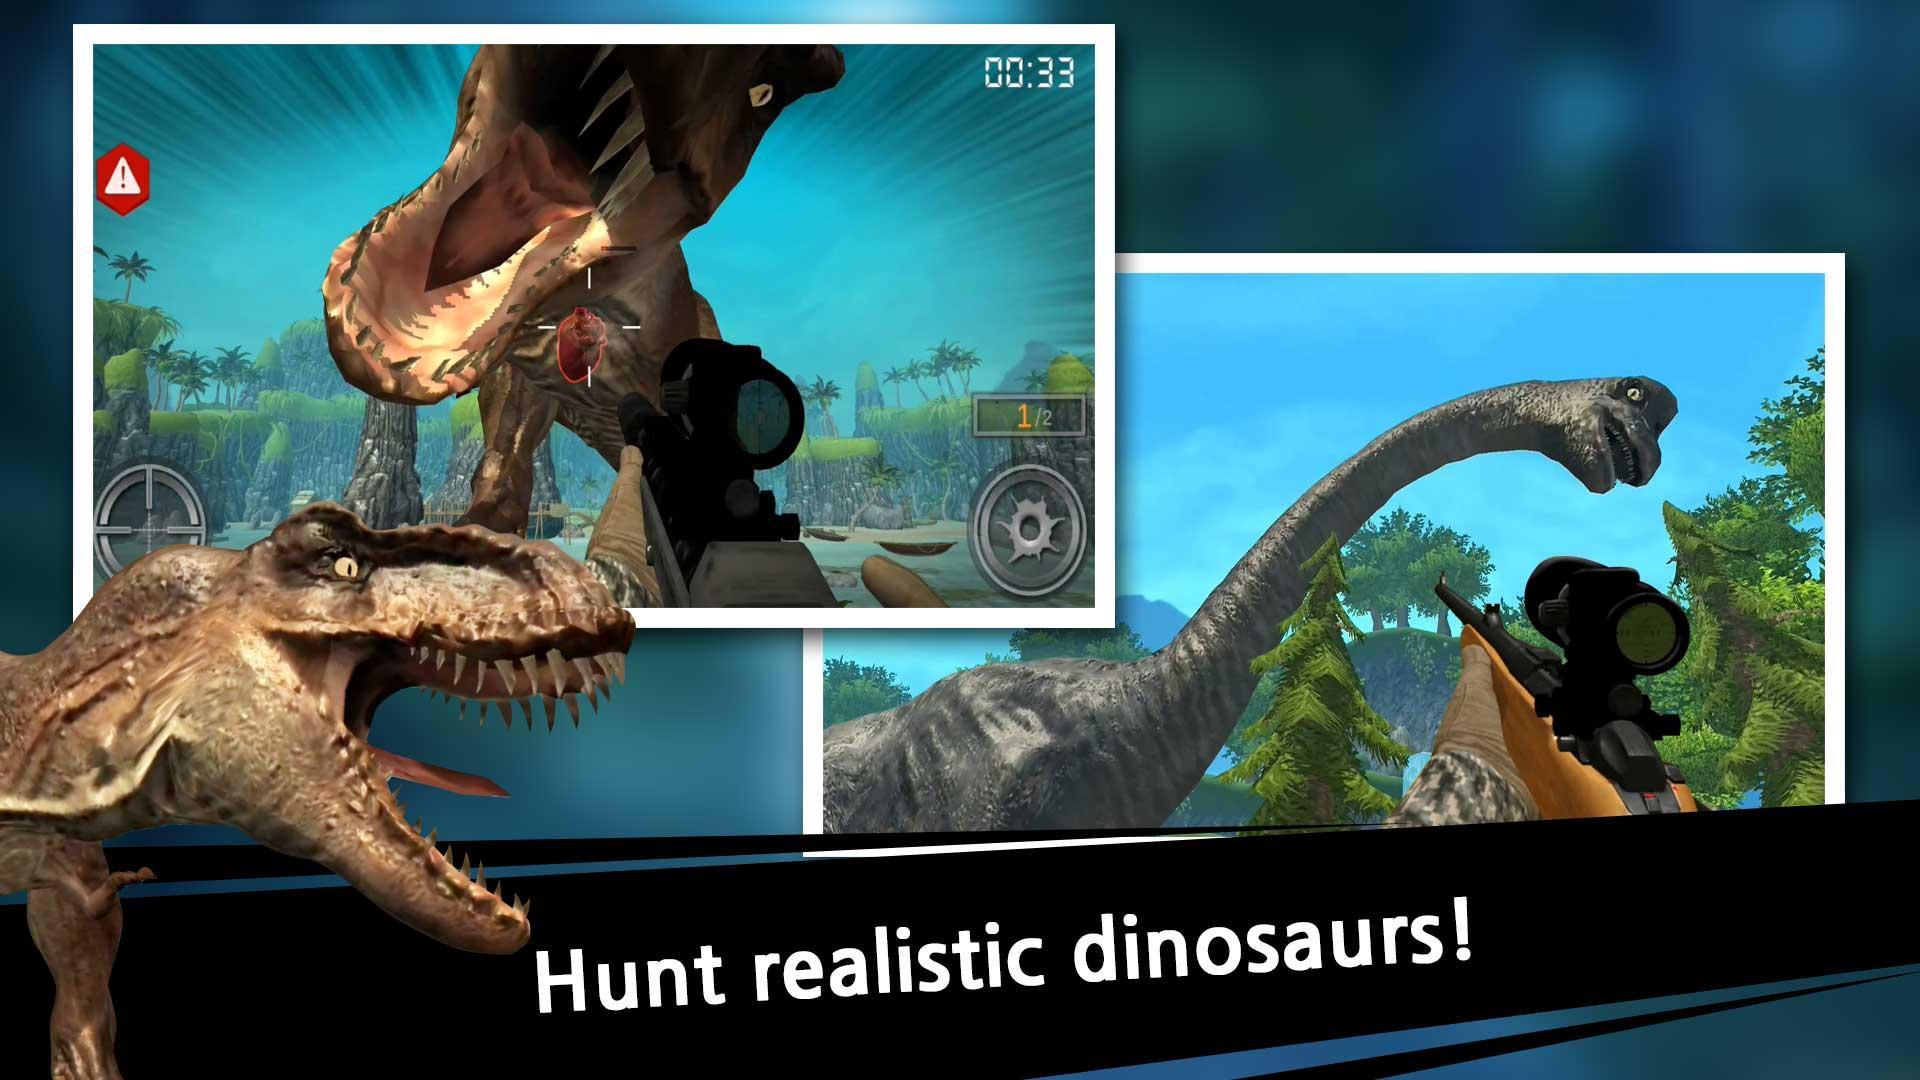 Screenshot 1 of vua thợ săn khủng long 1.0.36